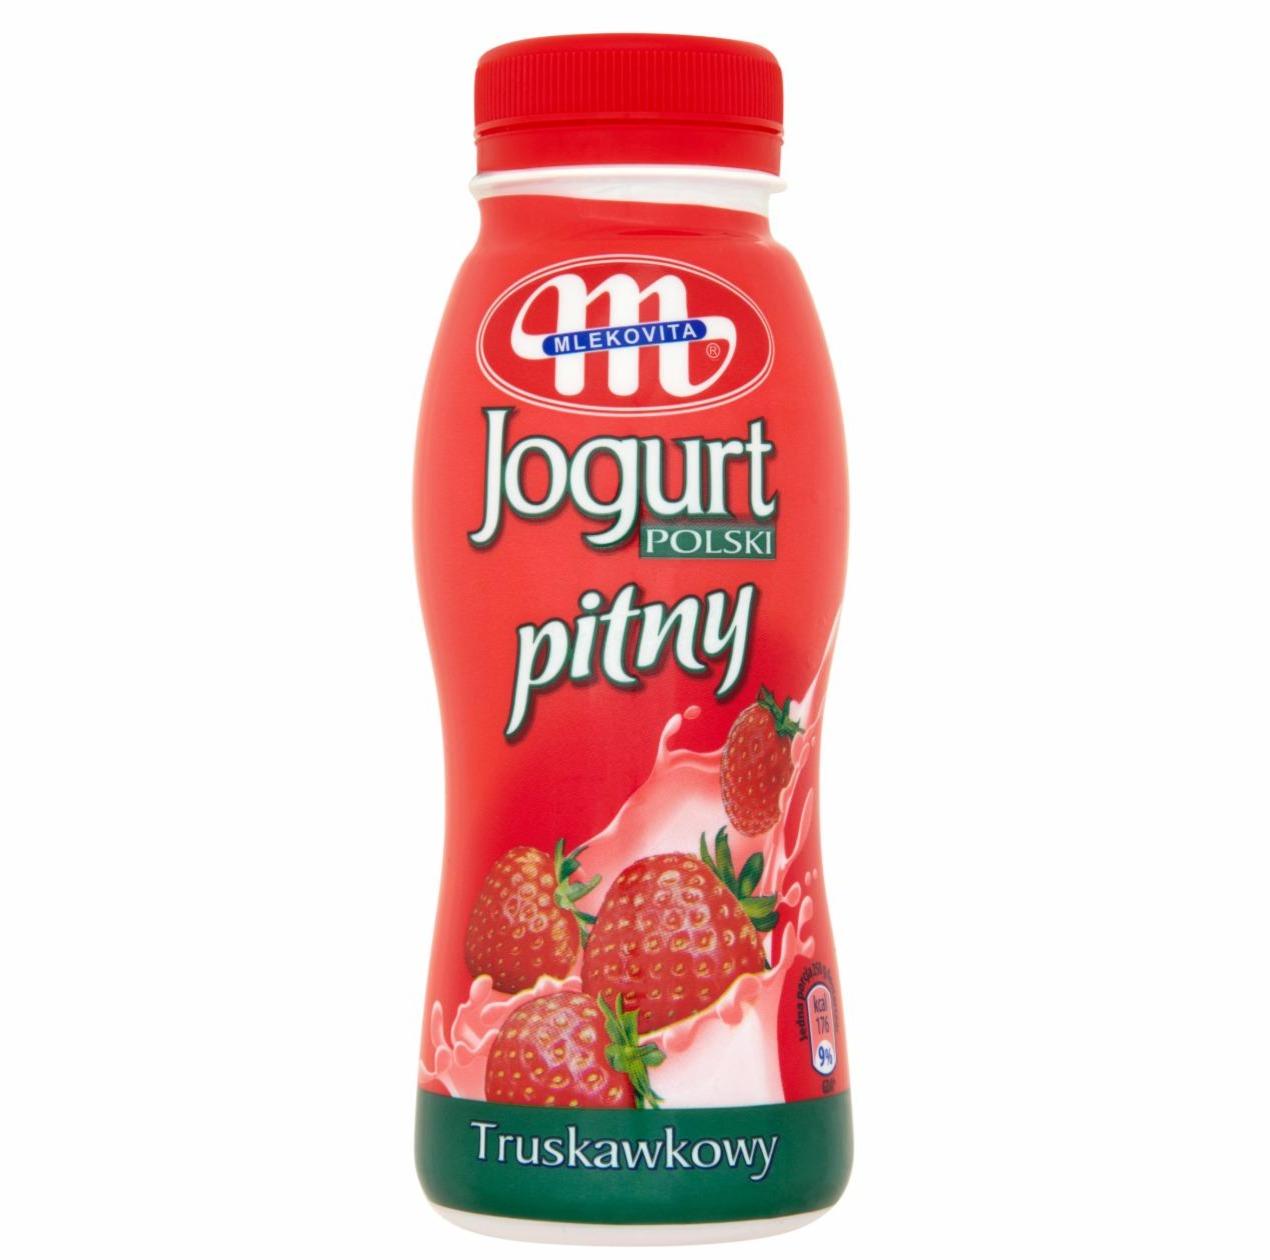 Zdjęcia - Jogurt Polski truskawkowy Mlekovita